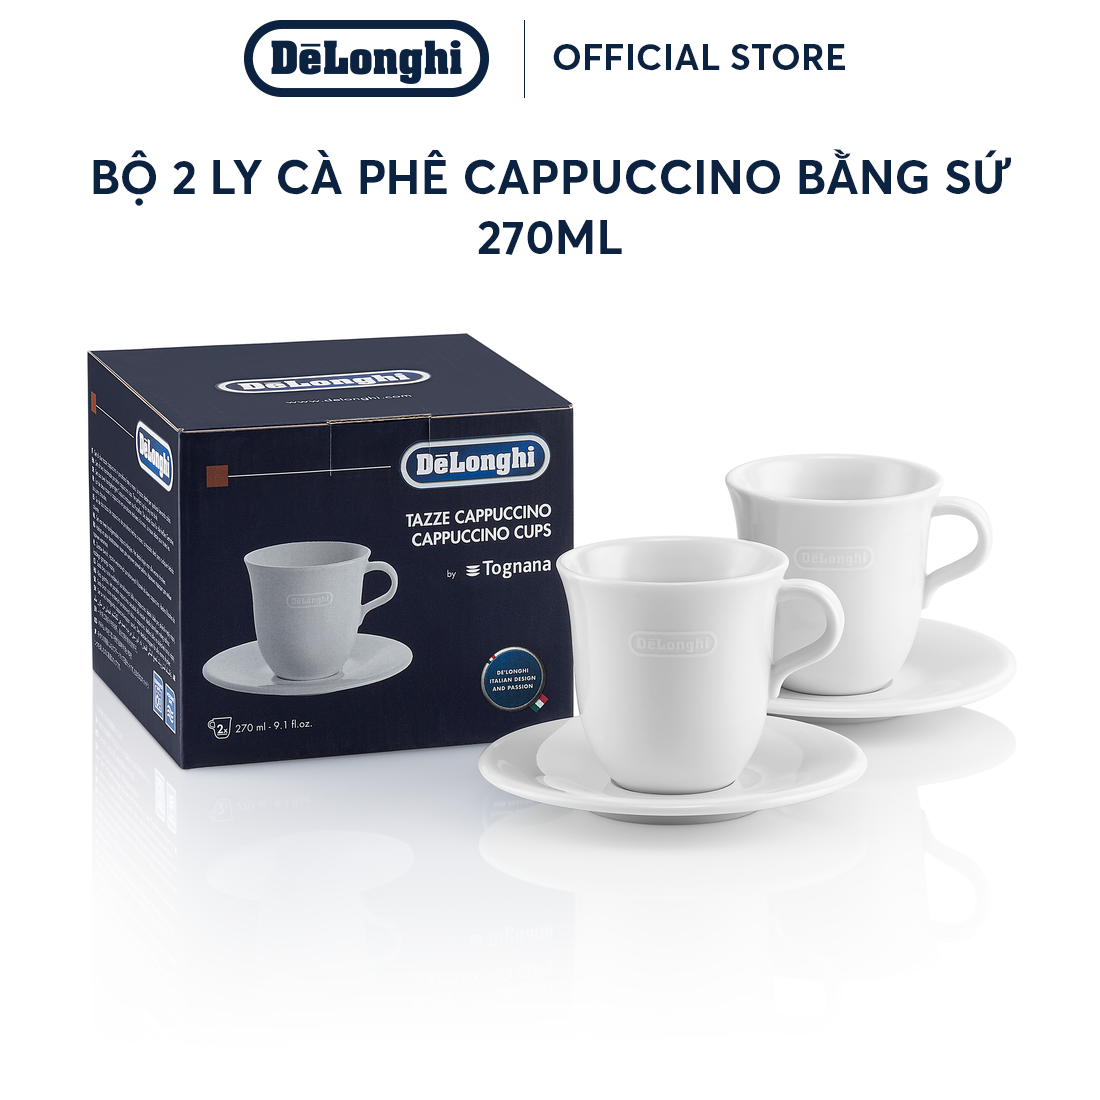 [Hàng chính hãng] Bộ 2 ly cà phê Cappuccino bằng sứ DeLonghi (270ml)